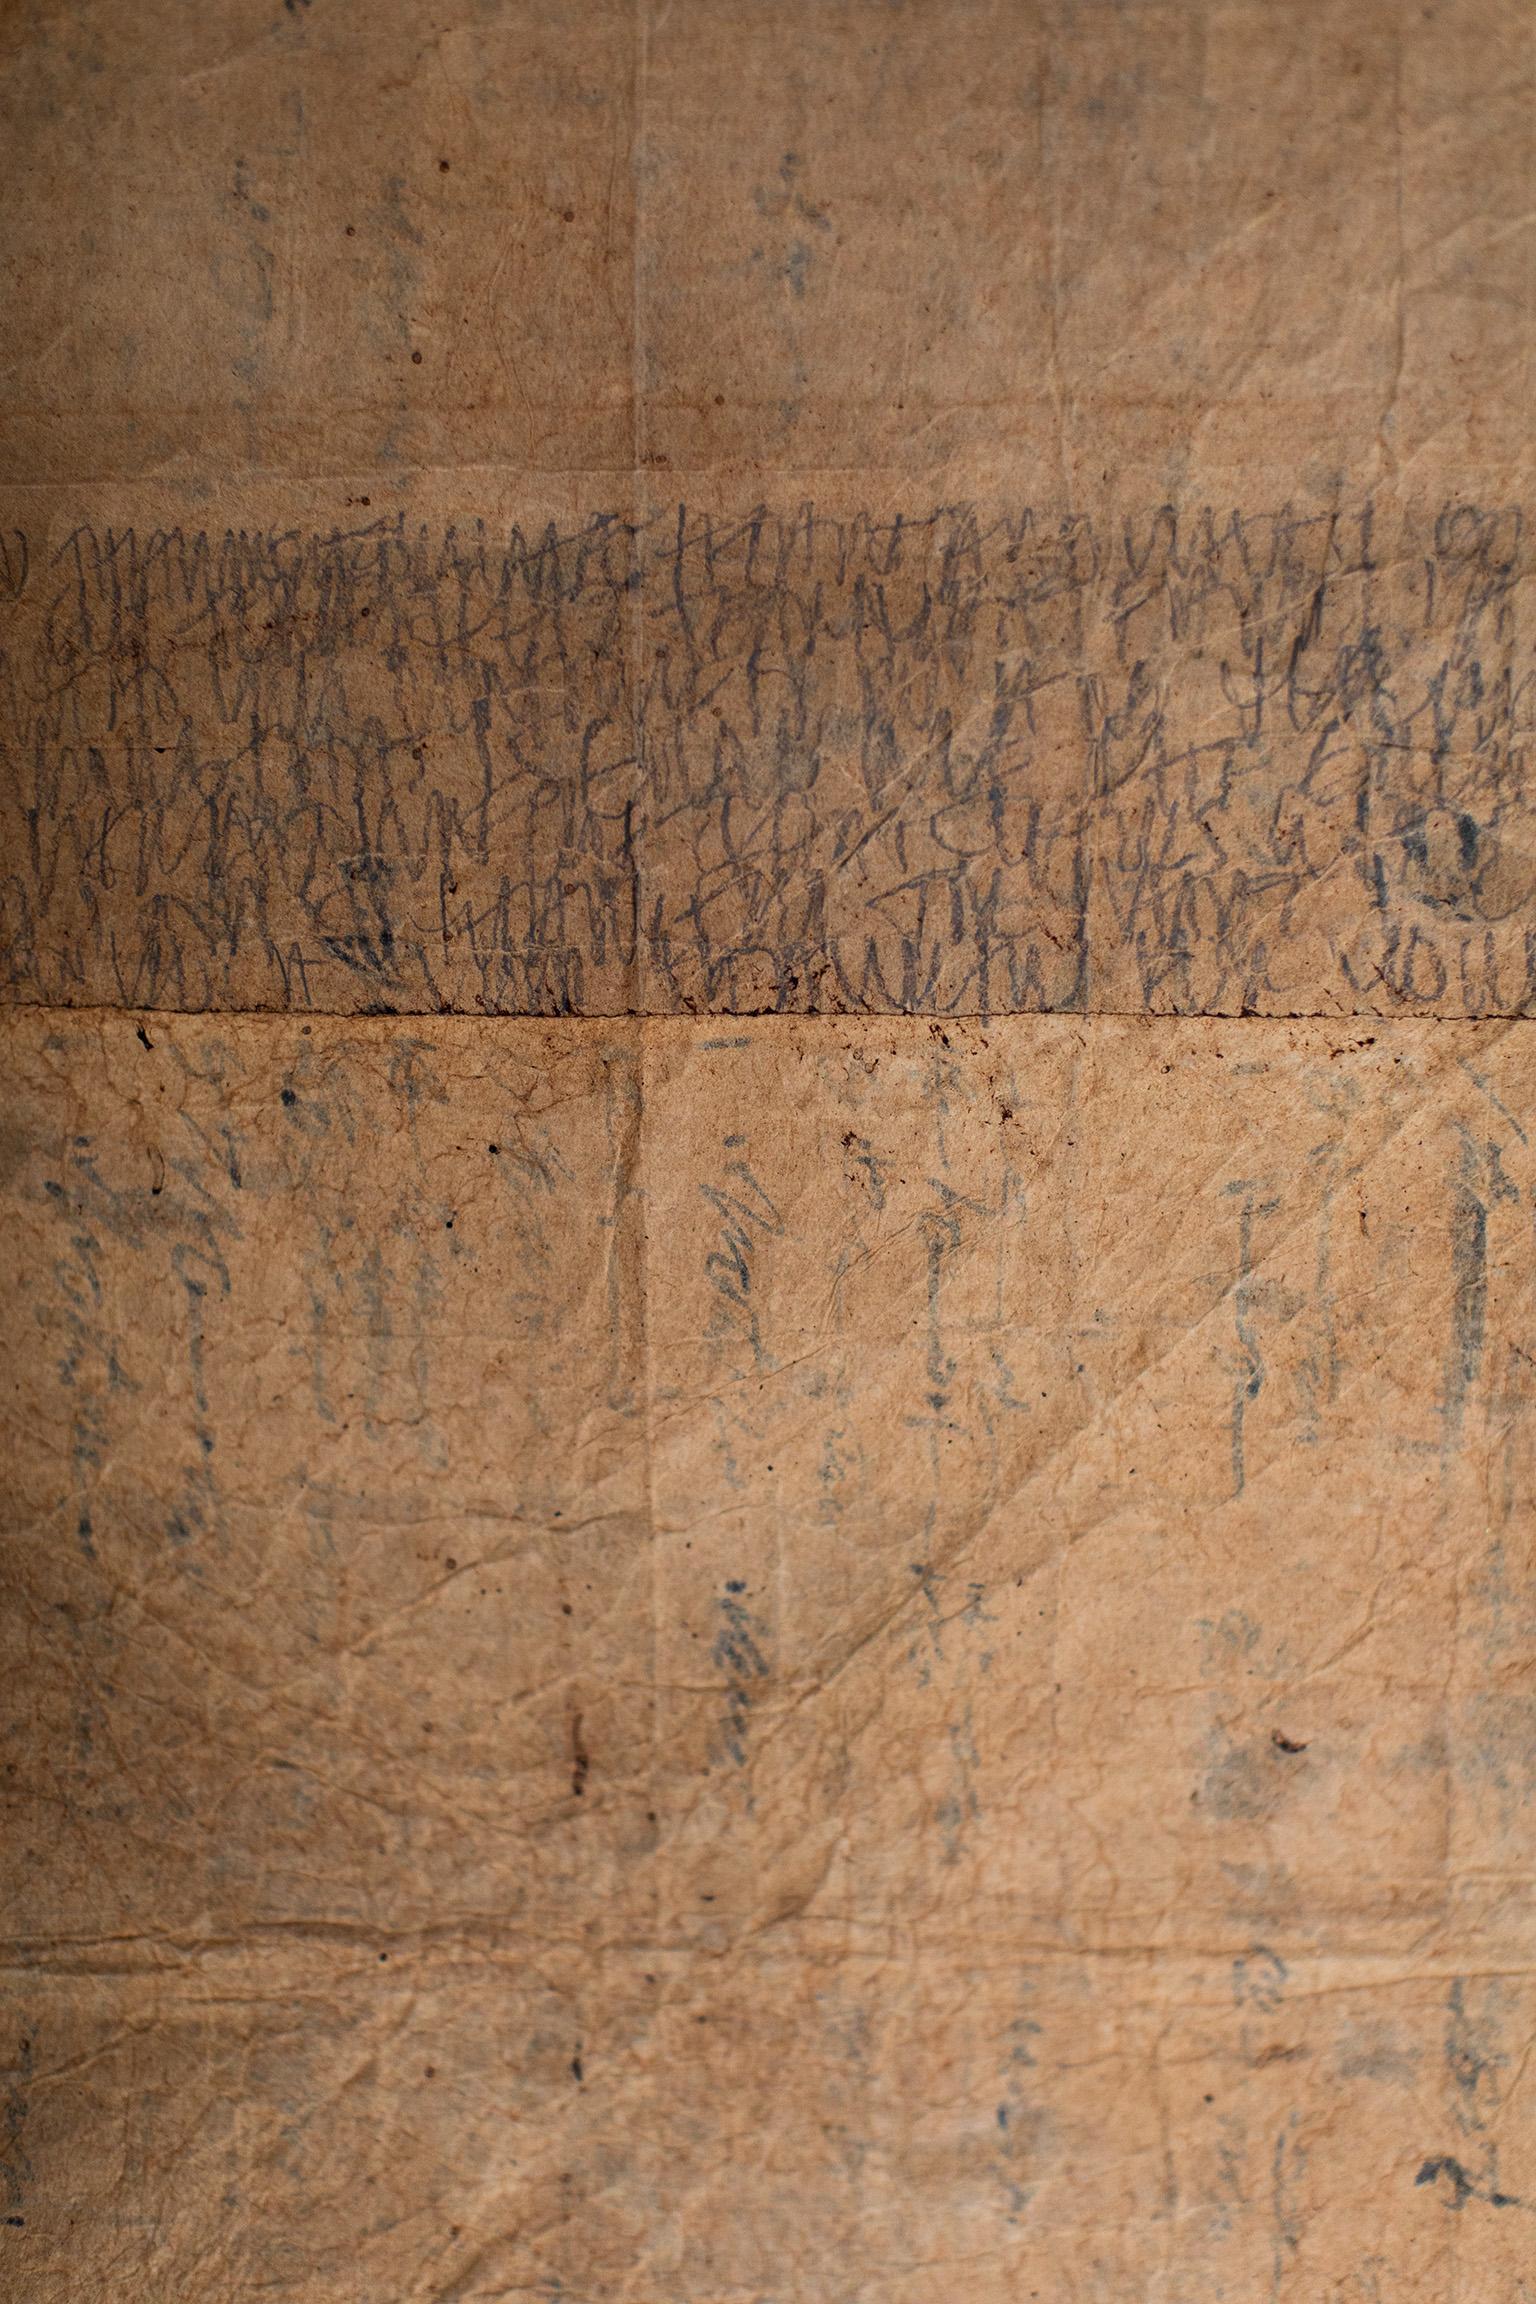 Contemporary Art, Antikes Japanpapier, Textilkunst - ungeschriebene Geschichte

A B O U T H I E S P I E K E :
Dieses 100 Jahre alte, ganzheitlich gefärbte Papier wurde im alten Japan zum Einwickeln von Textilien verwendet. Dieses Stück ist mit